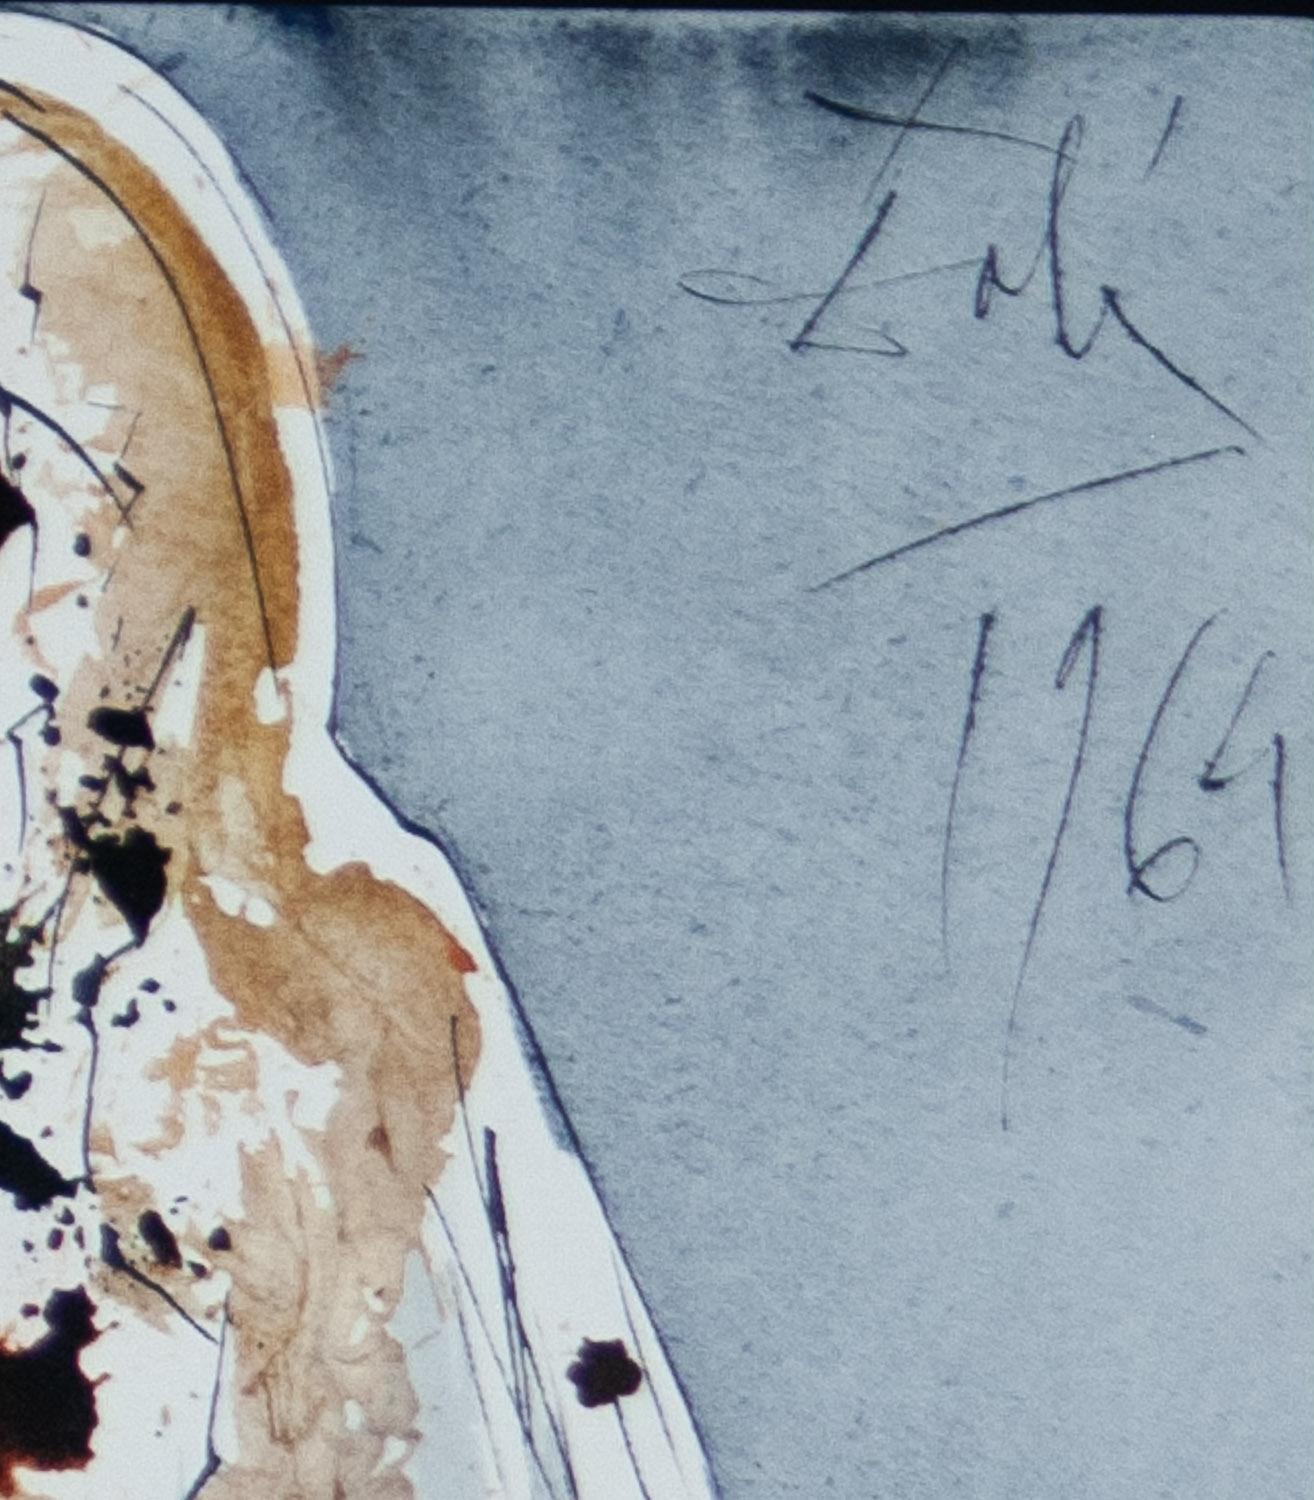 Élevés de Lazarus de Biblia Sacra par Salvador Dali - Surréalisme Print par Salvador Dalí